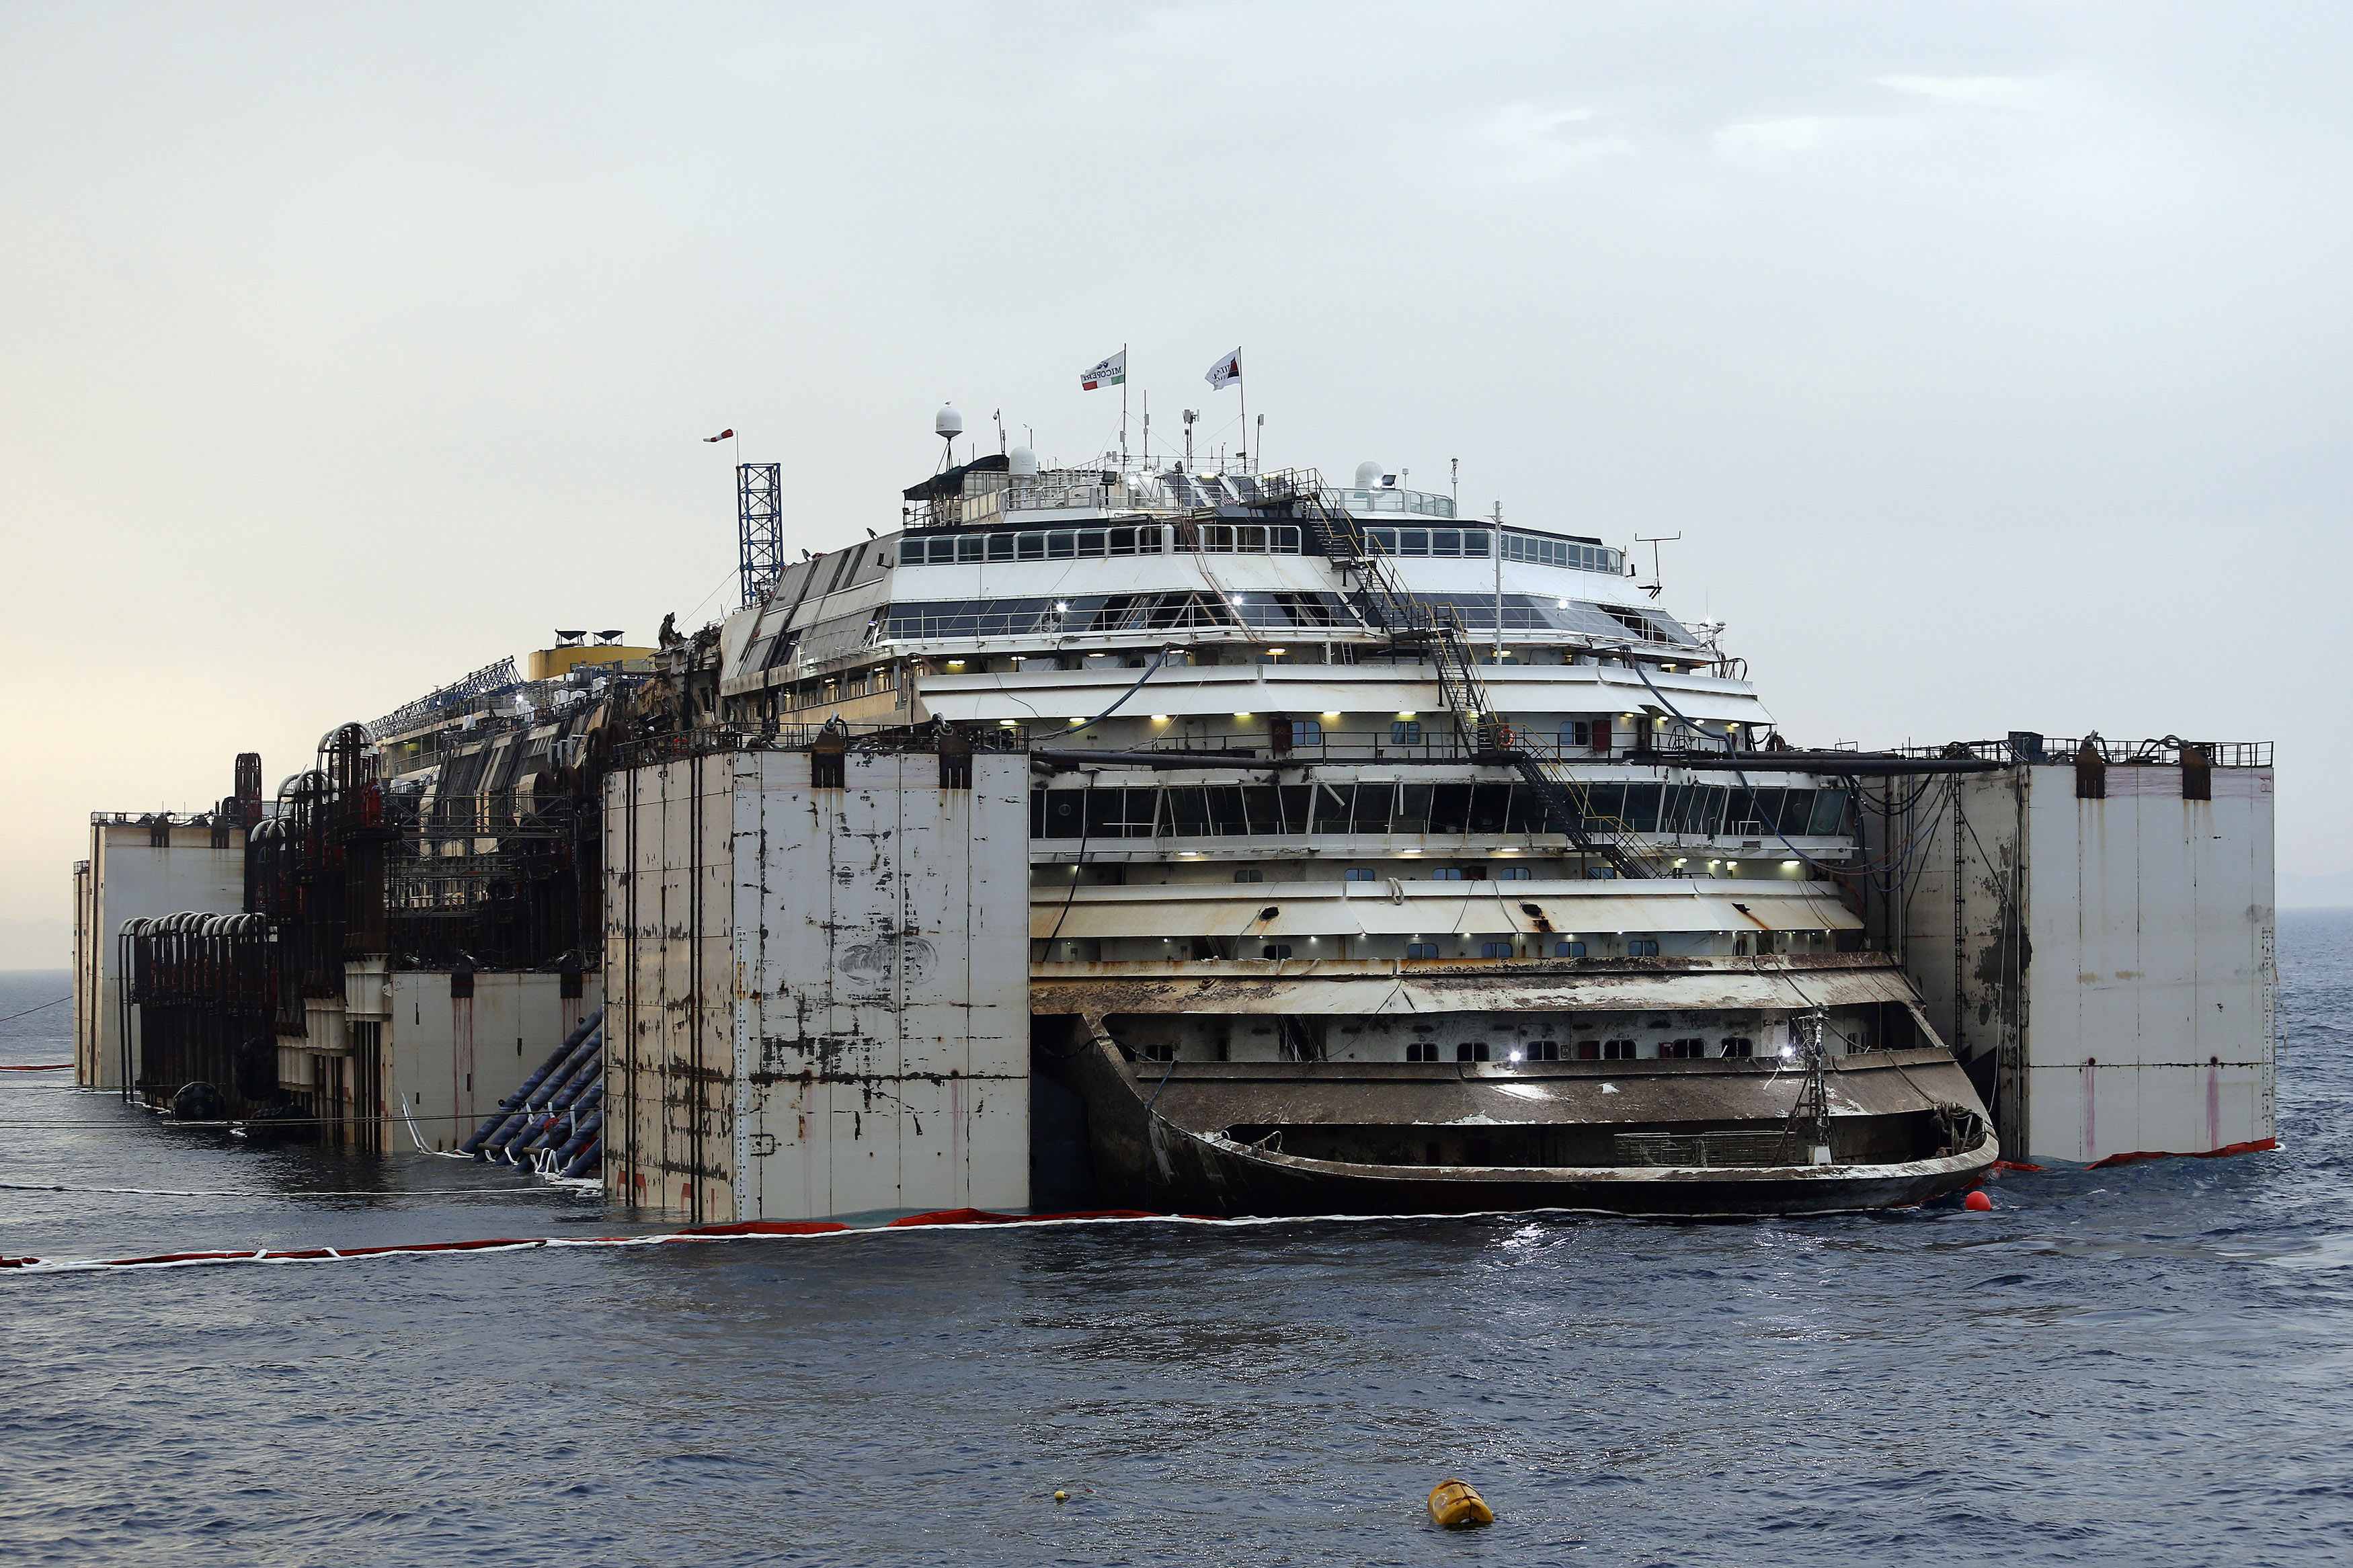 Φωτογραφικό αξιοθέατο έγινε το κρουαζιερόπλοιο Costa Concordia